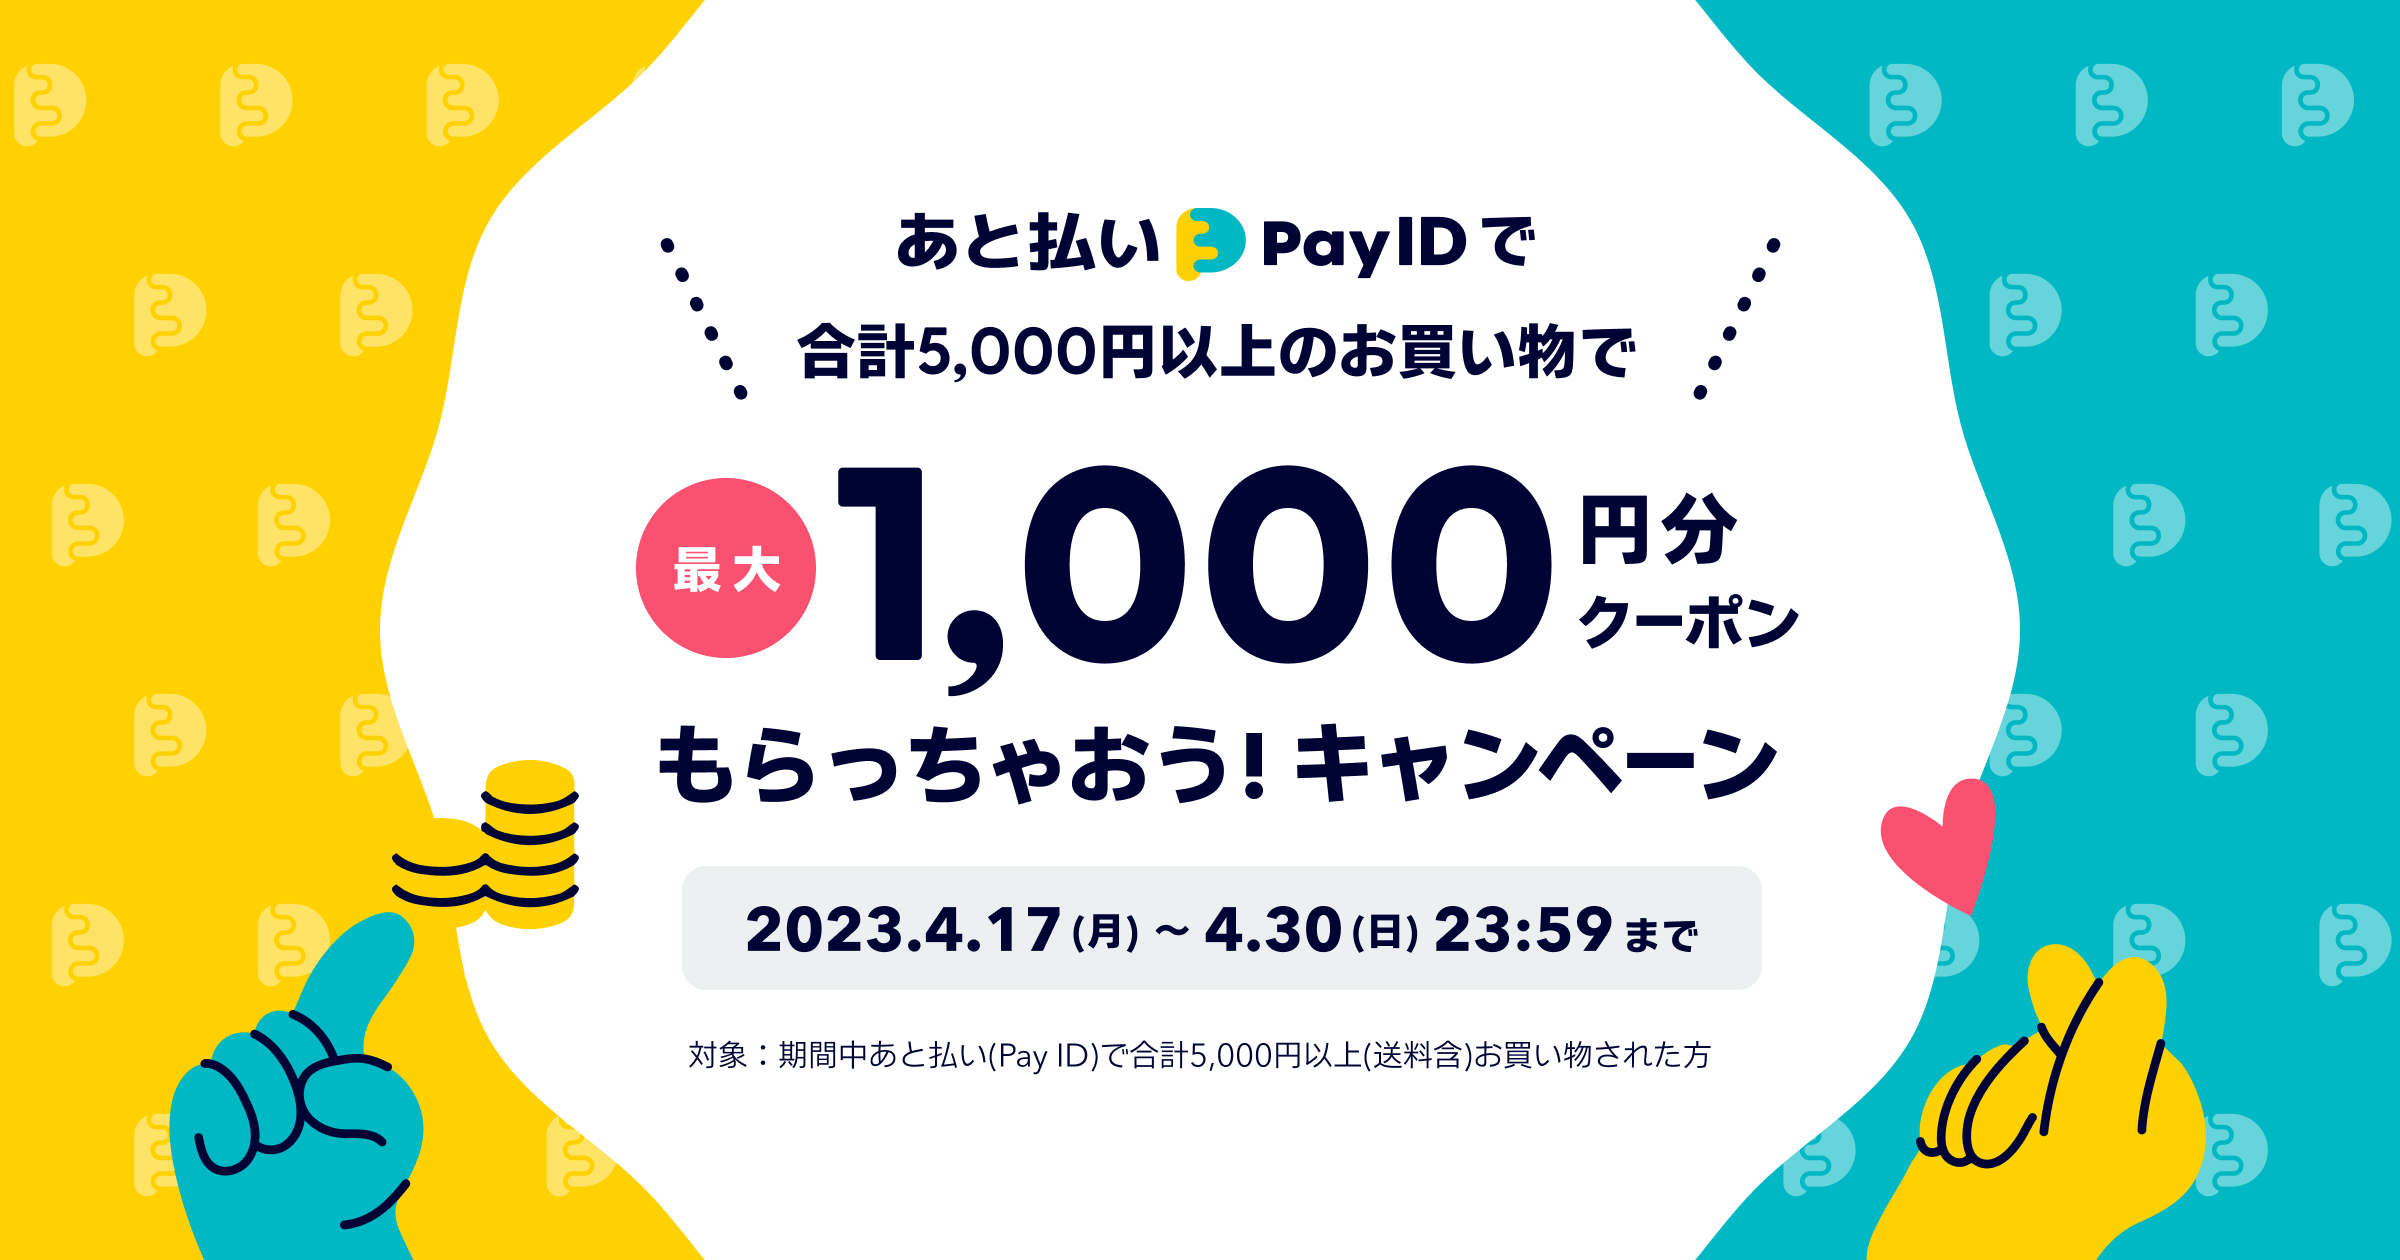 「あと払い（Pay ID）」で最大1,000円分のクーポンもらっちゃおう！キャンペーン